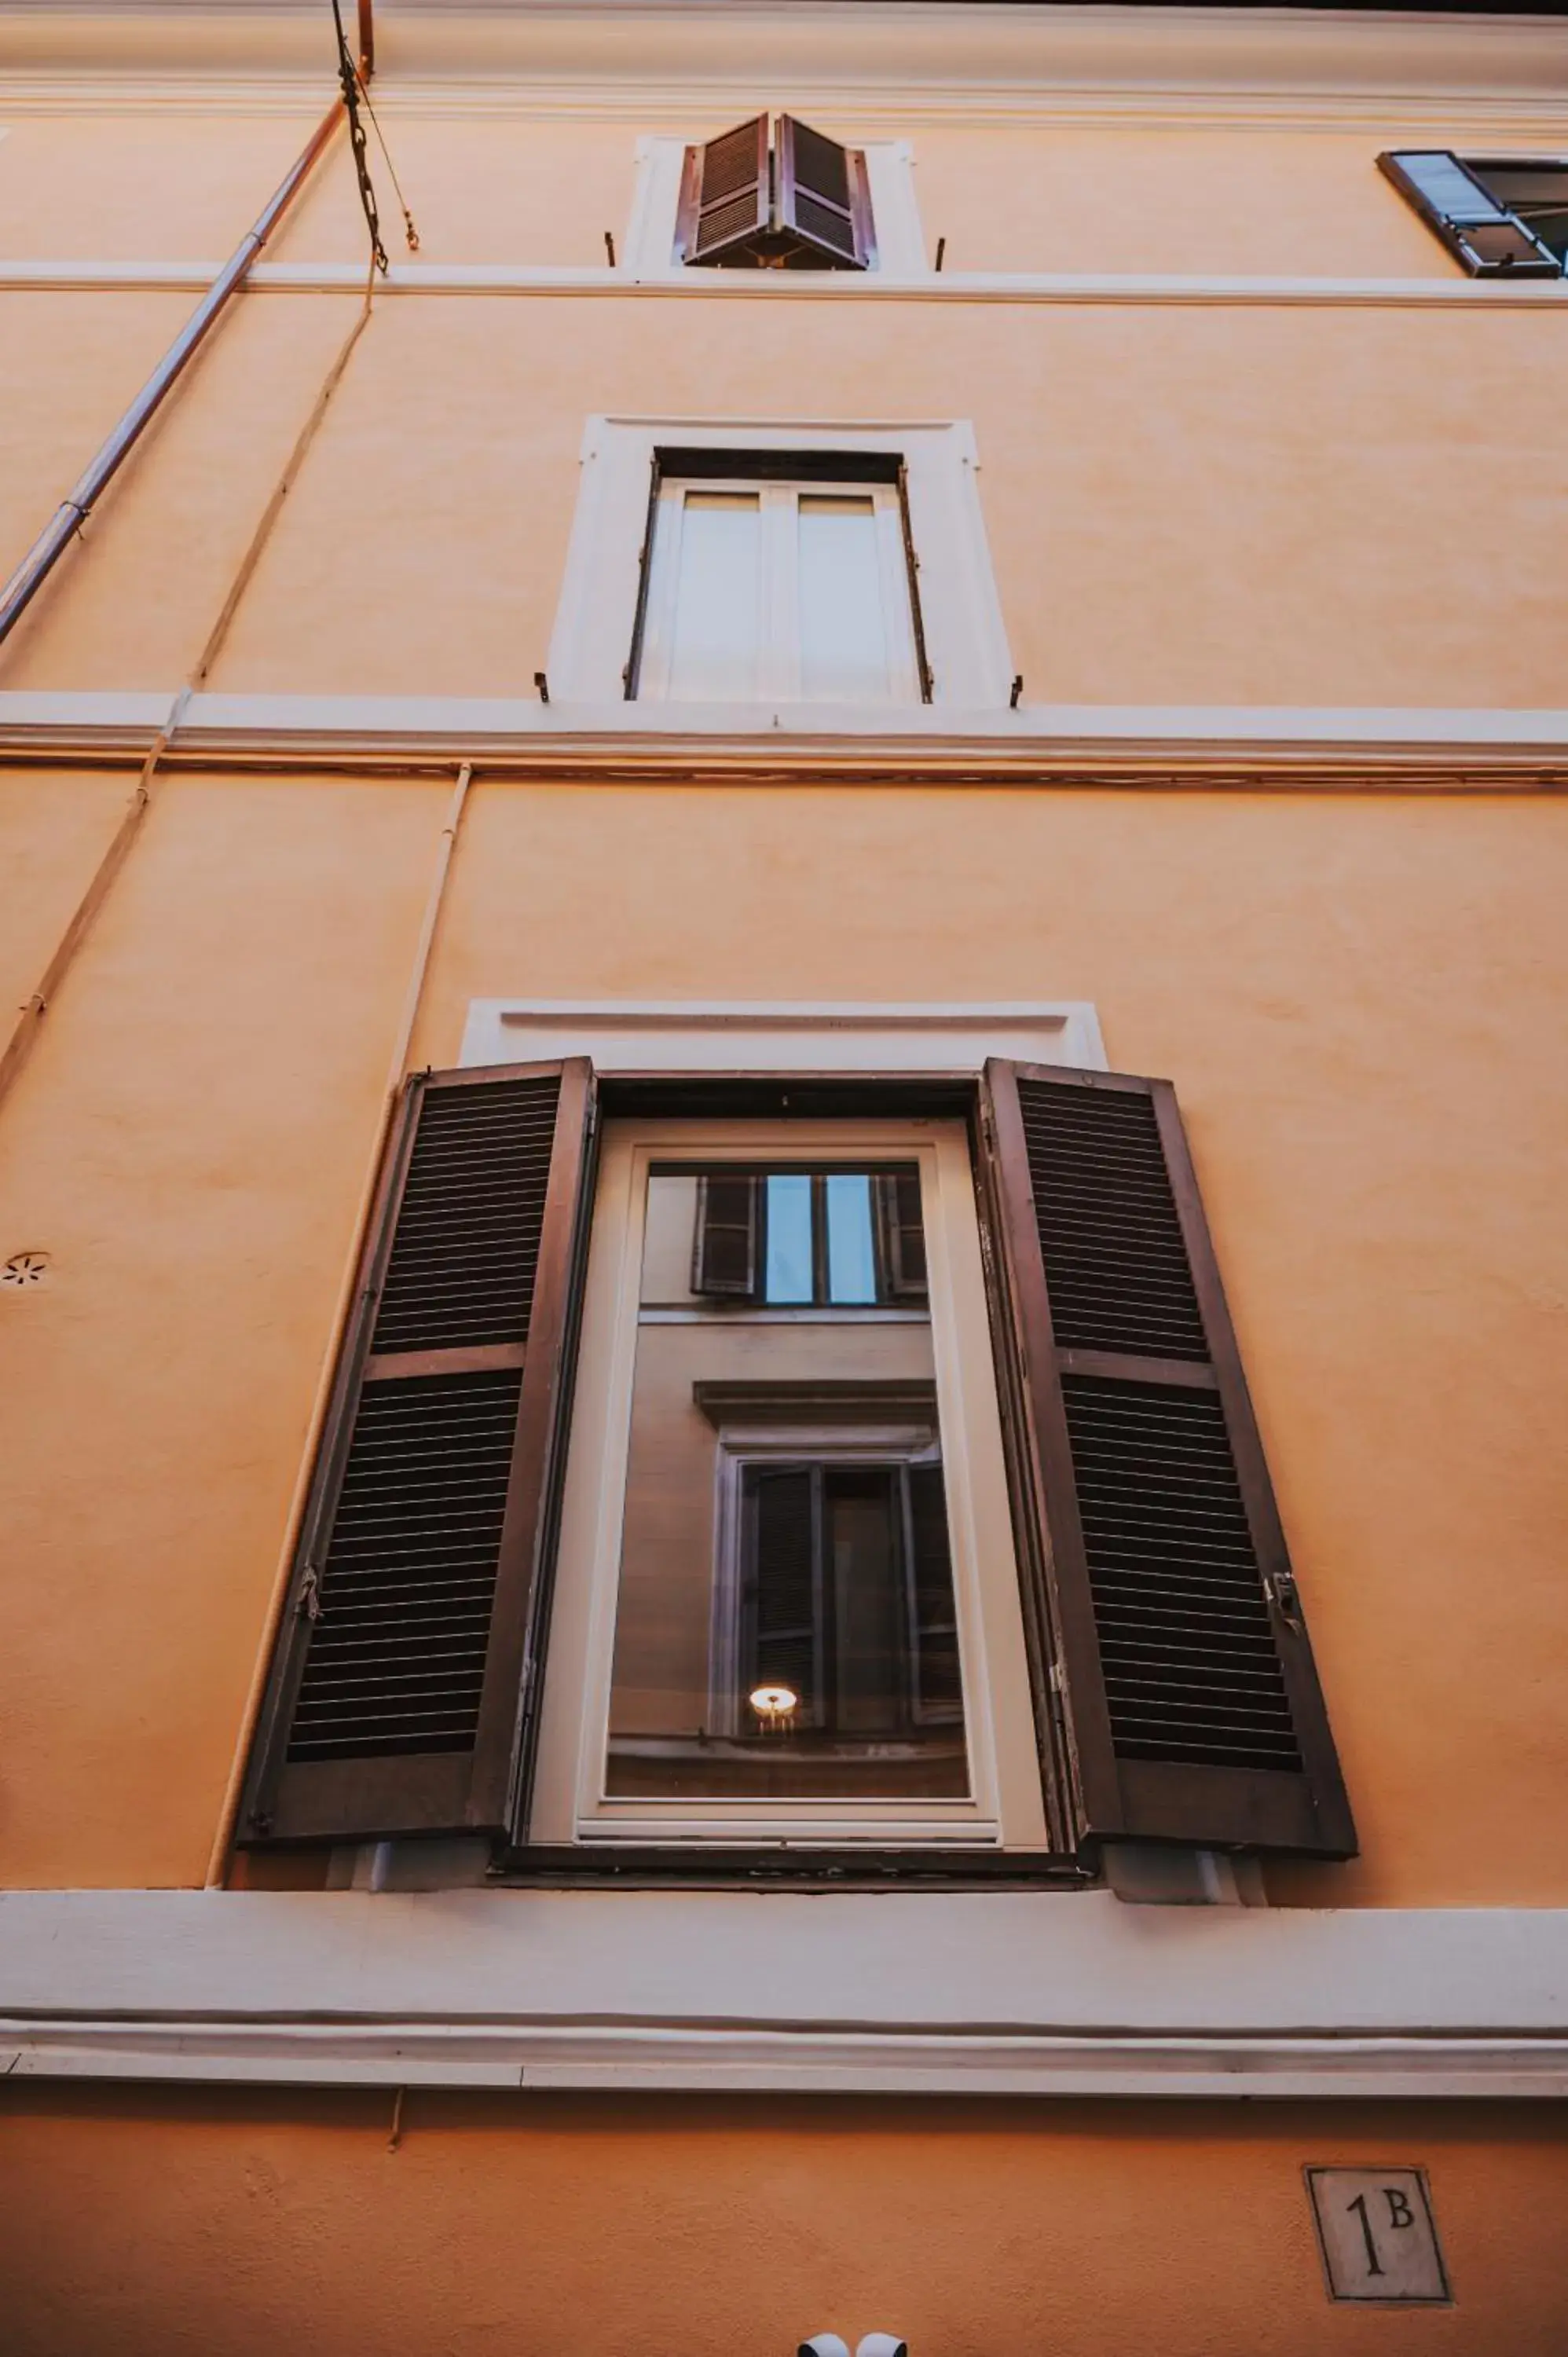 Property Building in Albergo Delle Regioni, Barberini - Fontana di Trevi